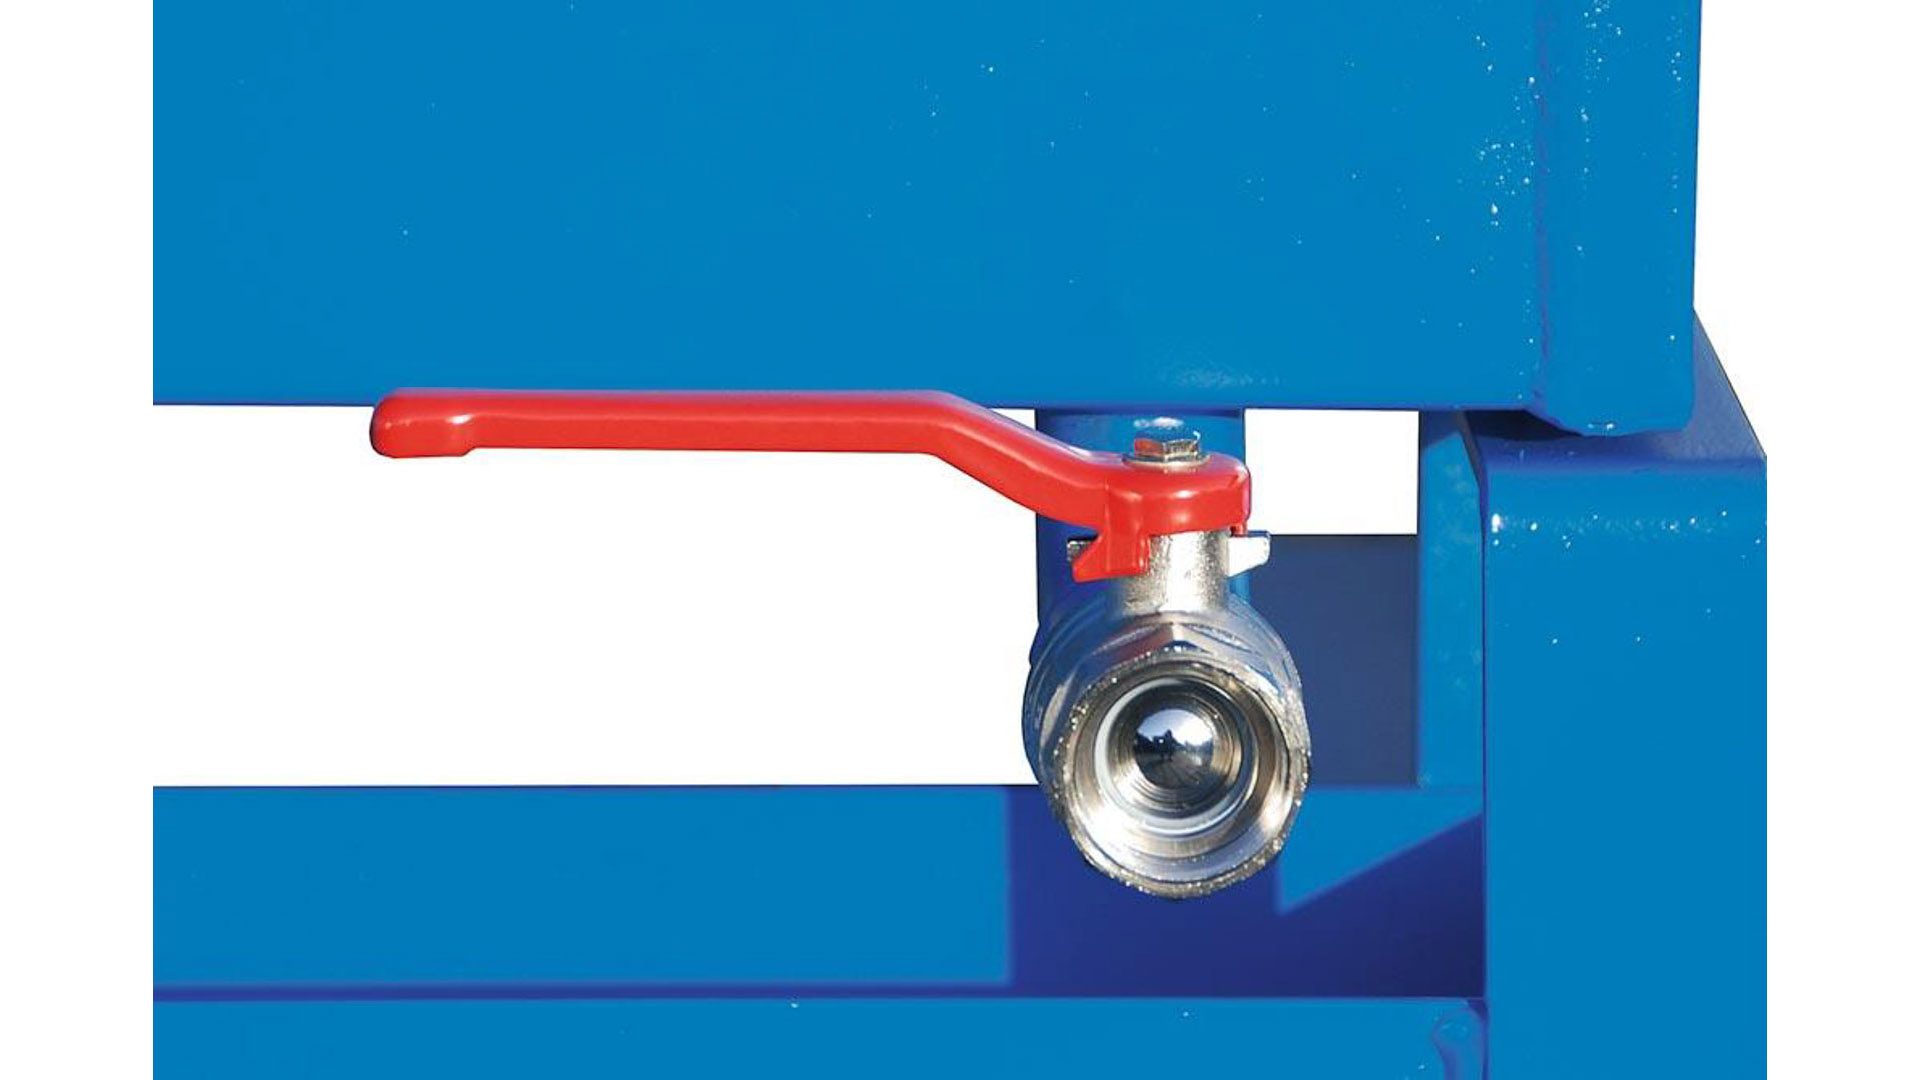 Späne-Selbstkippbehälter mit Abrollsystem, Volumen 1,70 cbm, LxBxH 1720x1570x1095 mm, lackiert RAL 5012 blau